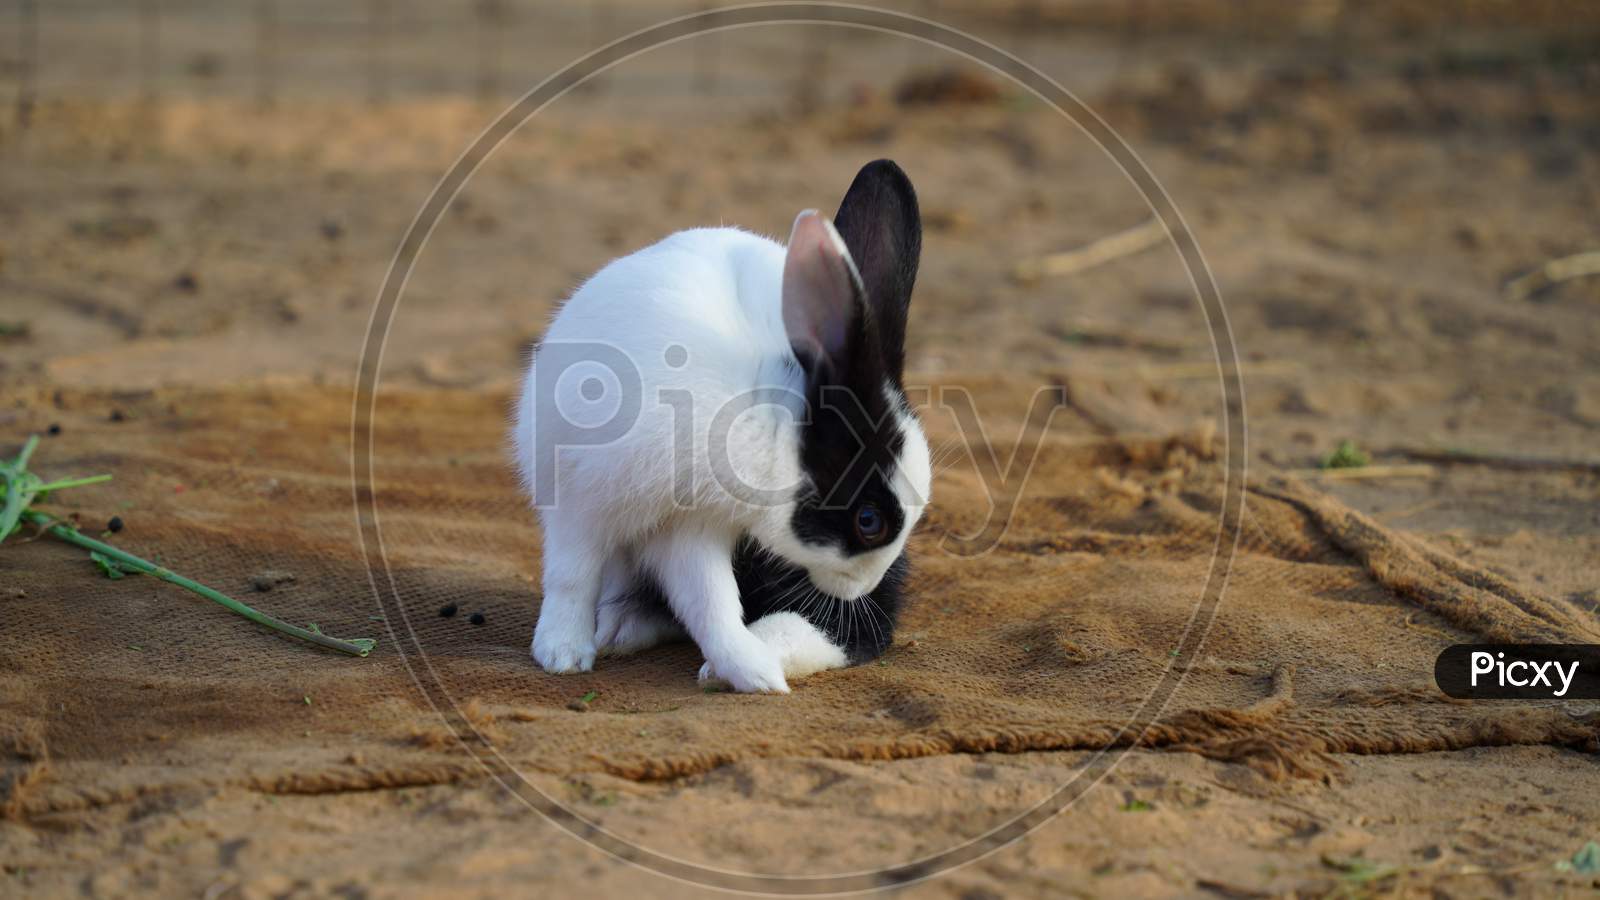 black and white baby rabbit